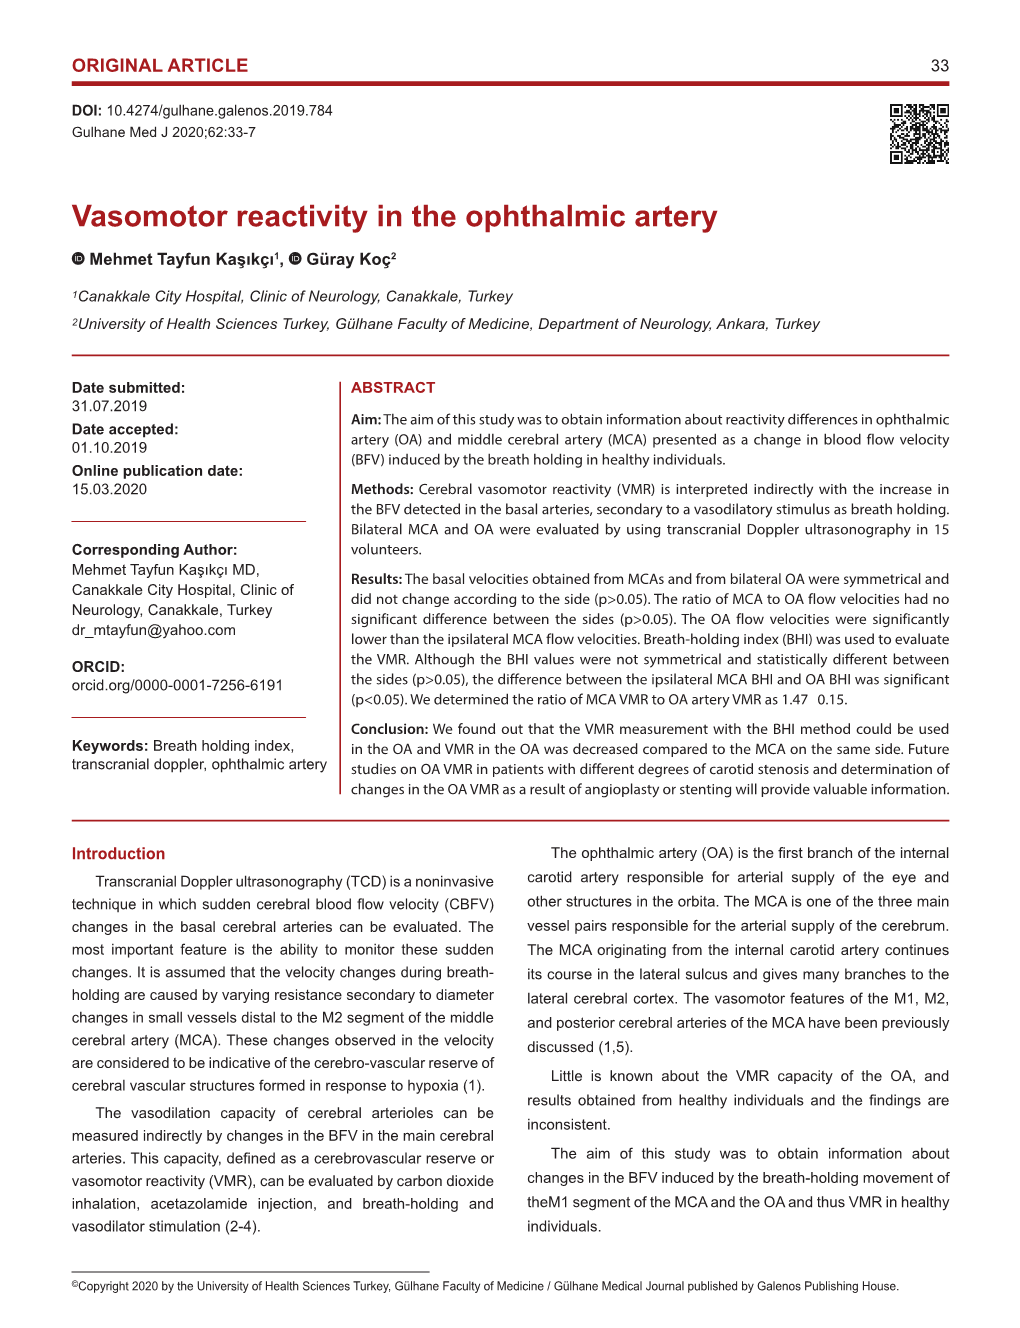 Vasomotor Reactivity in the Ophthalmic Artery Mehmet Tayfun Kaşıkçı1, Güray Koç2